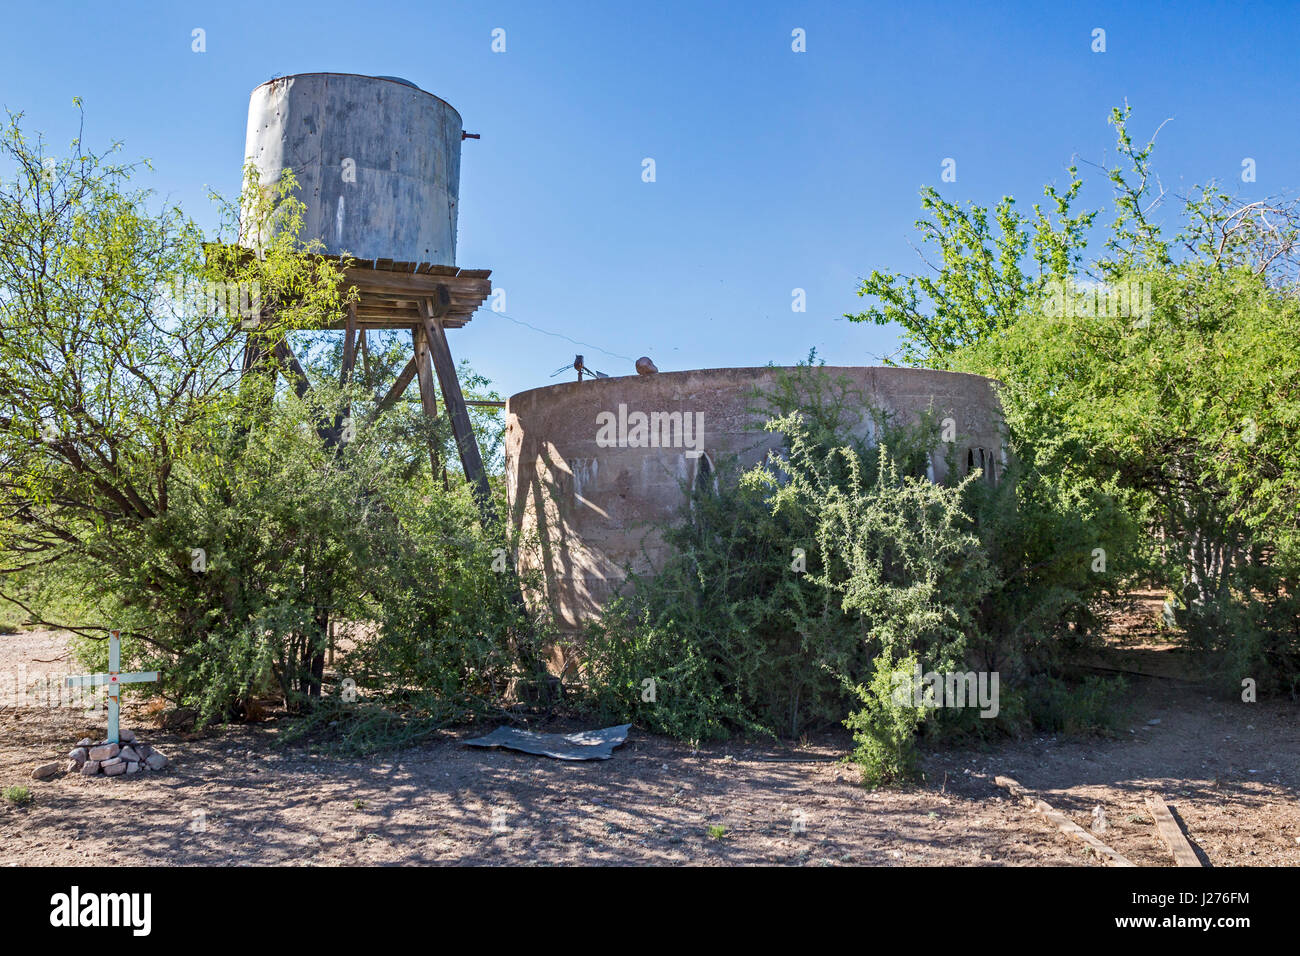 Tucson, Arizona - Un réservoir utilisé par les éleveurs pour stocker l'eau pour le bétail dans le désert de l'Arizona. La croix en bas à gauche indique qu'un migrant est mort Banque D'Images